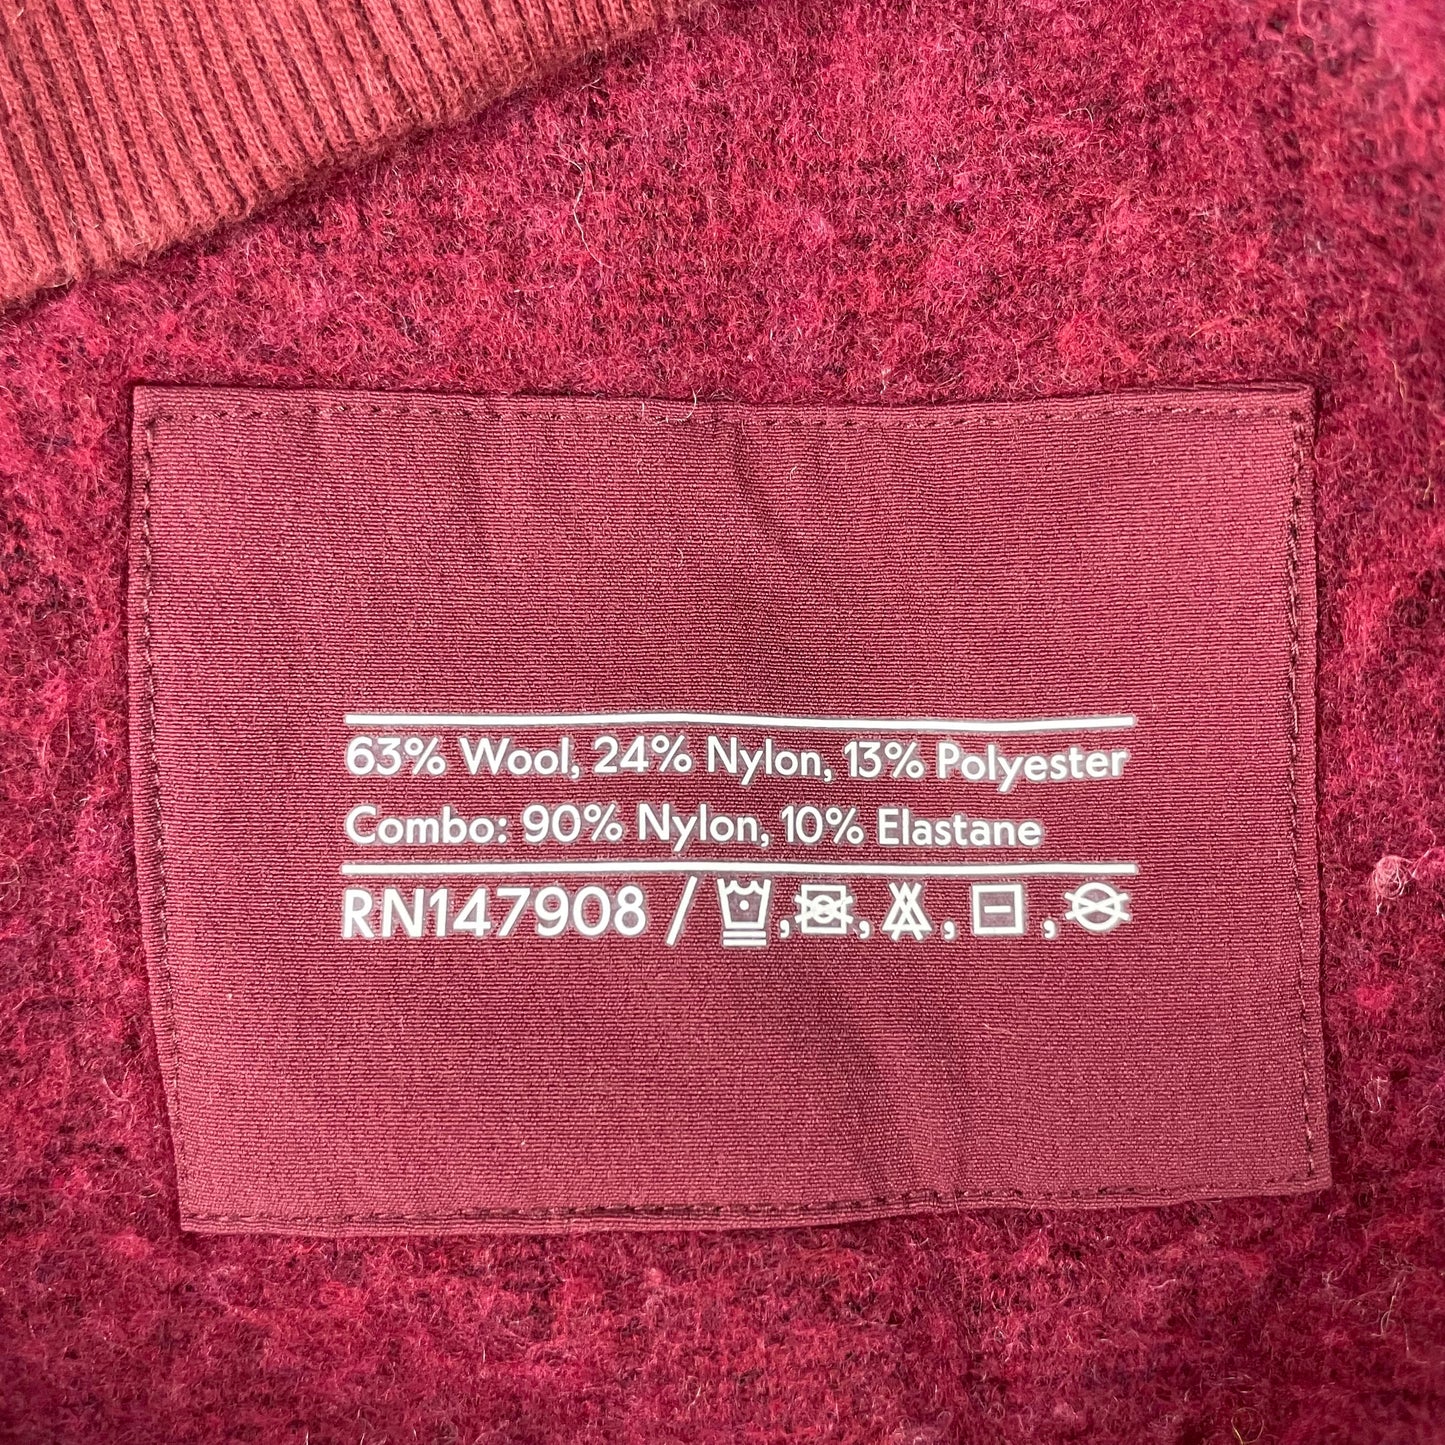 Outdoor Voices Megafleece Himalayan Seasalt Truffle Pink 1/2 Zip Fleece Jacket Size XS